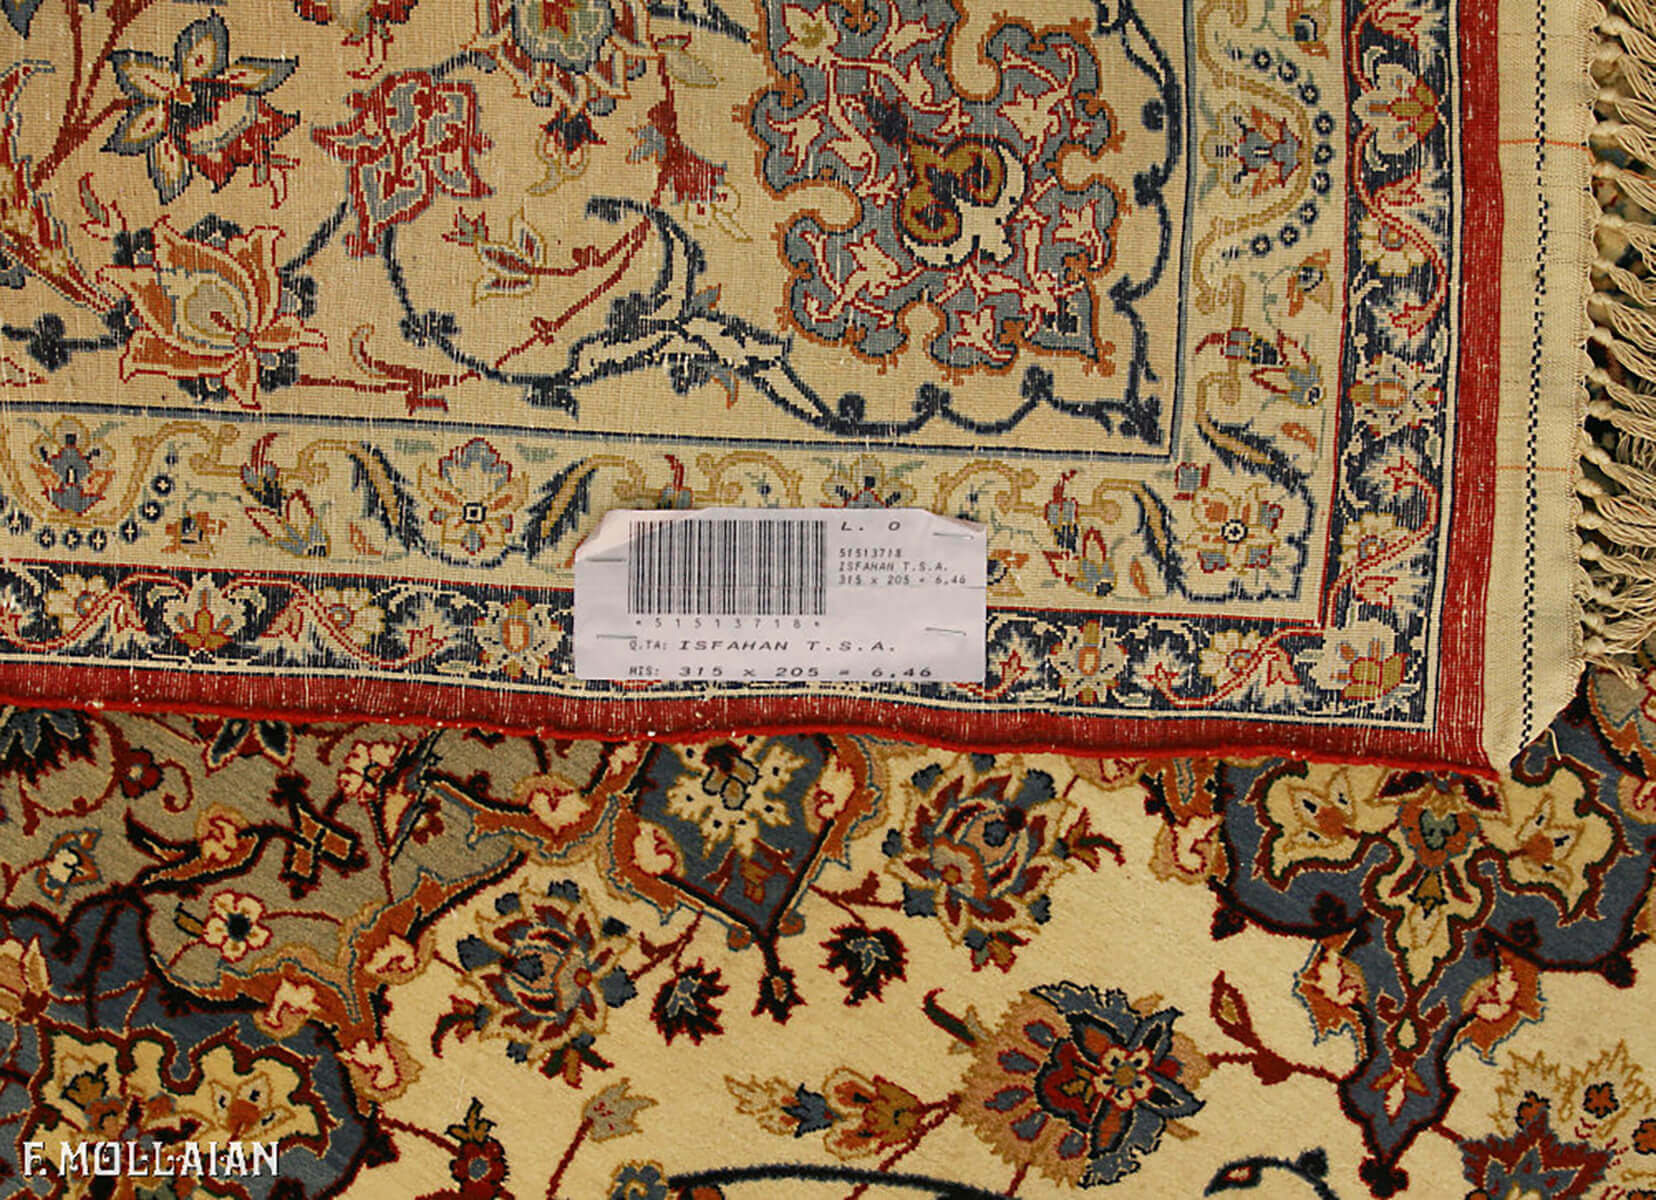 فرش نیمه آنتیک اصفهان با ریشه ابریشم کد:۵۱۵۱۳۷۱۸